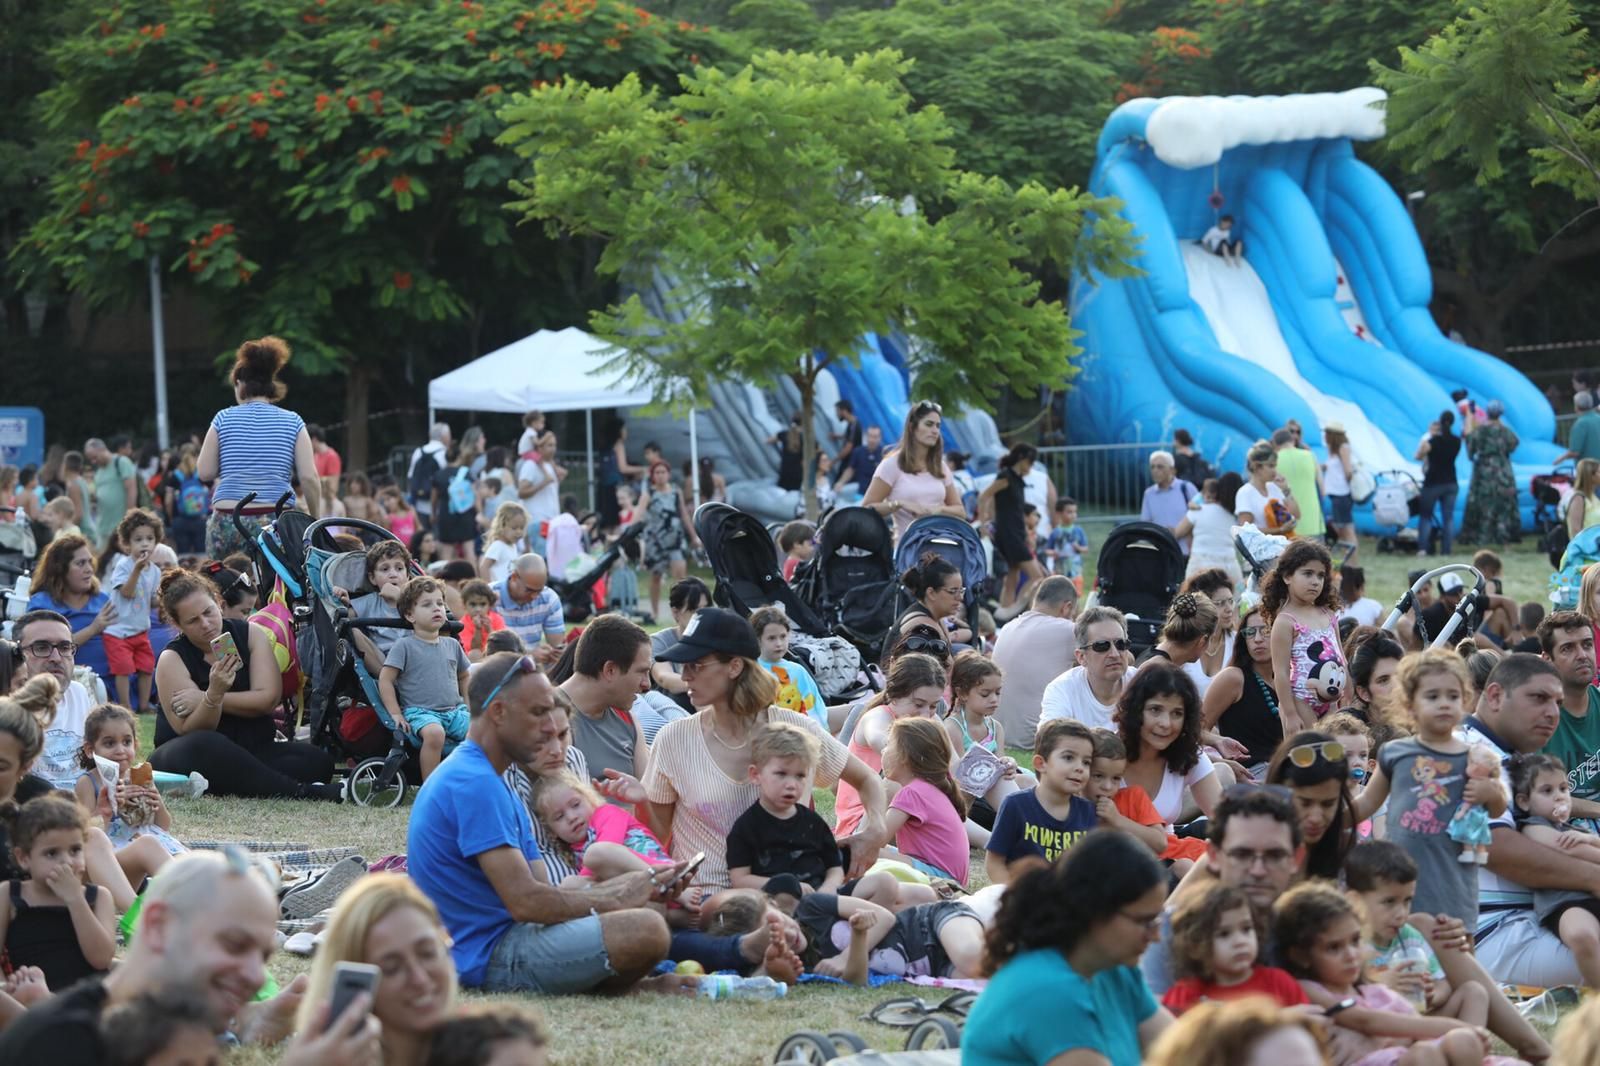 מאות ילדים נהנו מאירוע מתנפחים, מים והופעות בפארק רבקה במסגרת אירועי הקיץ